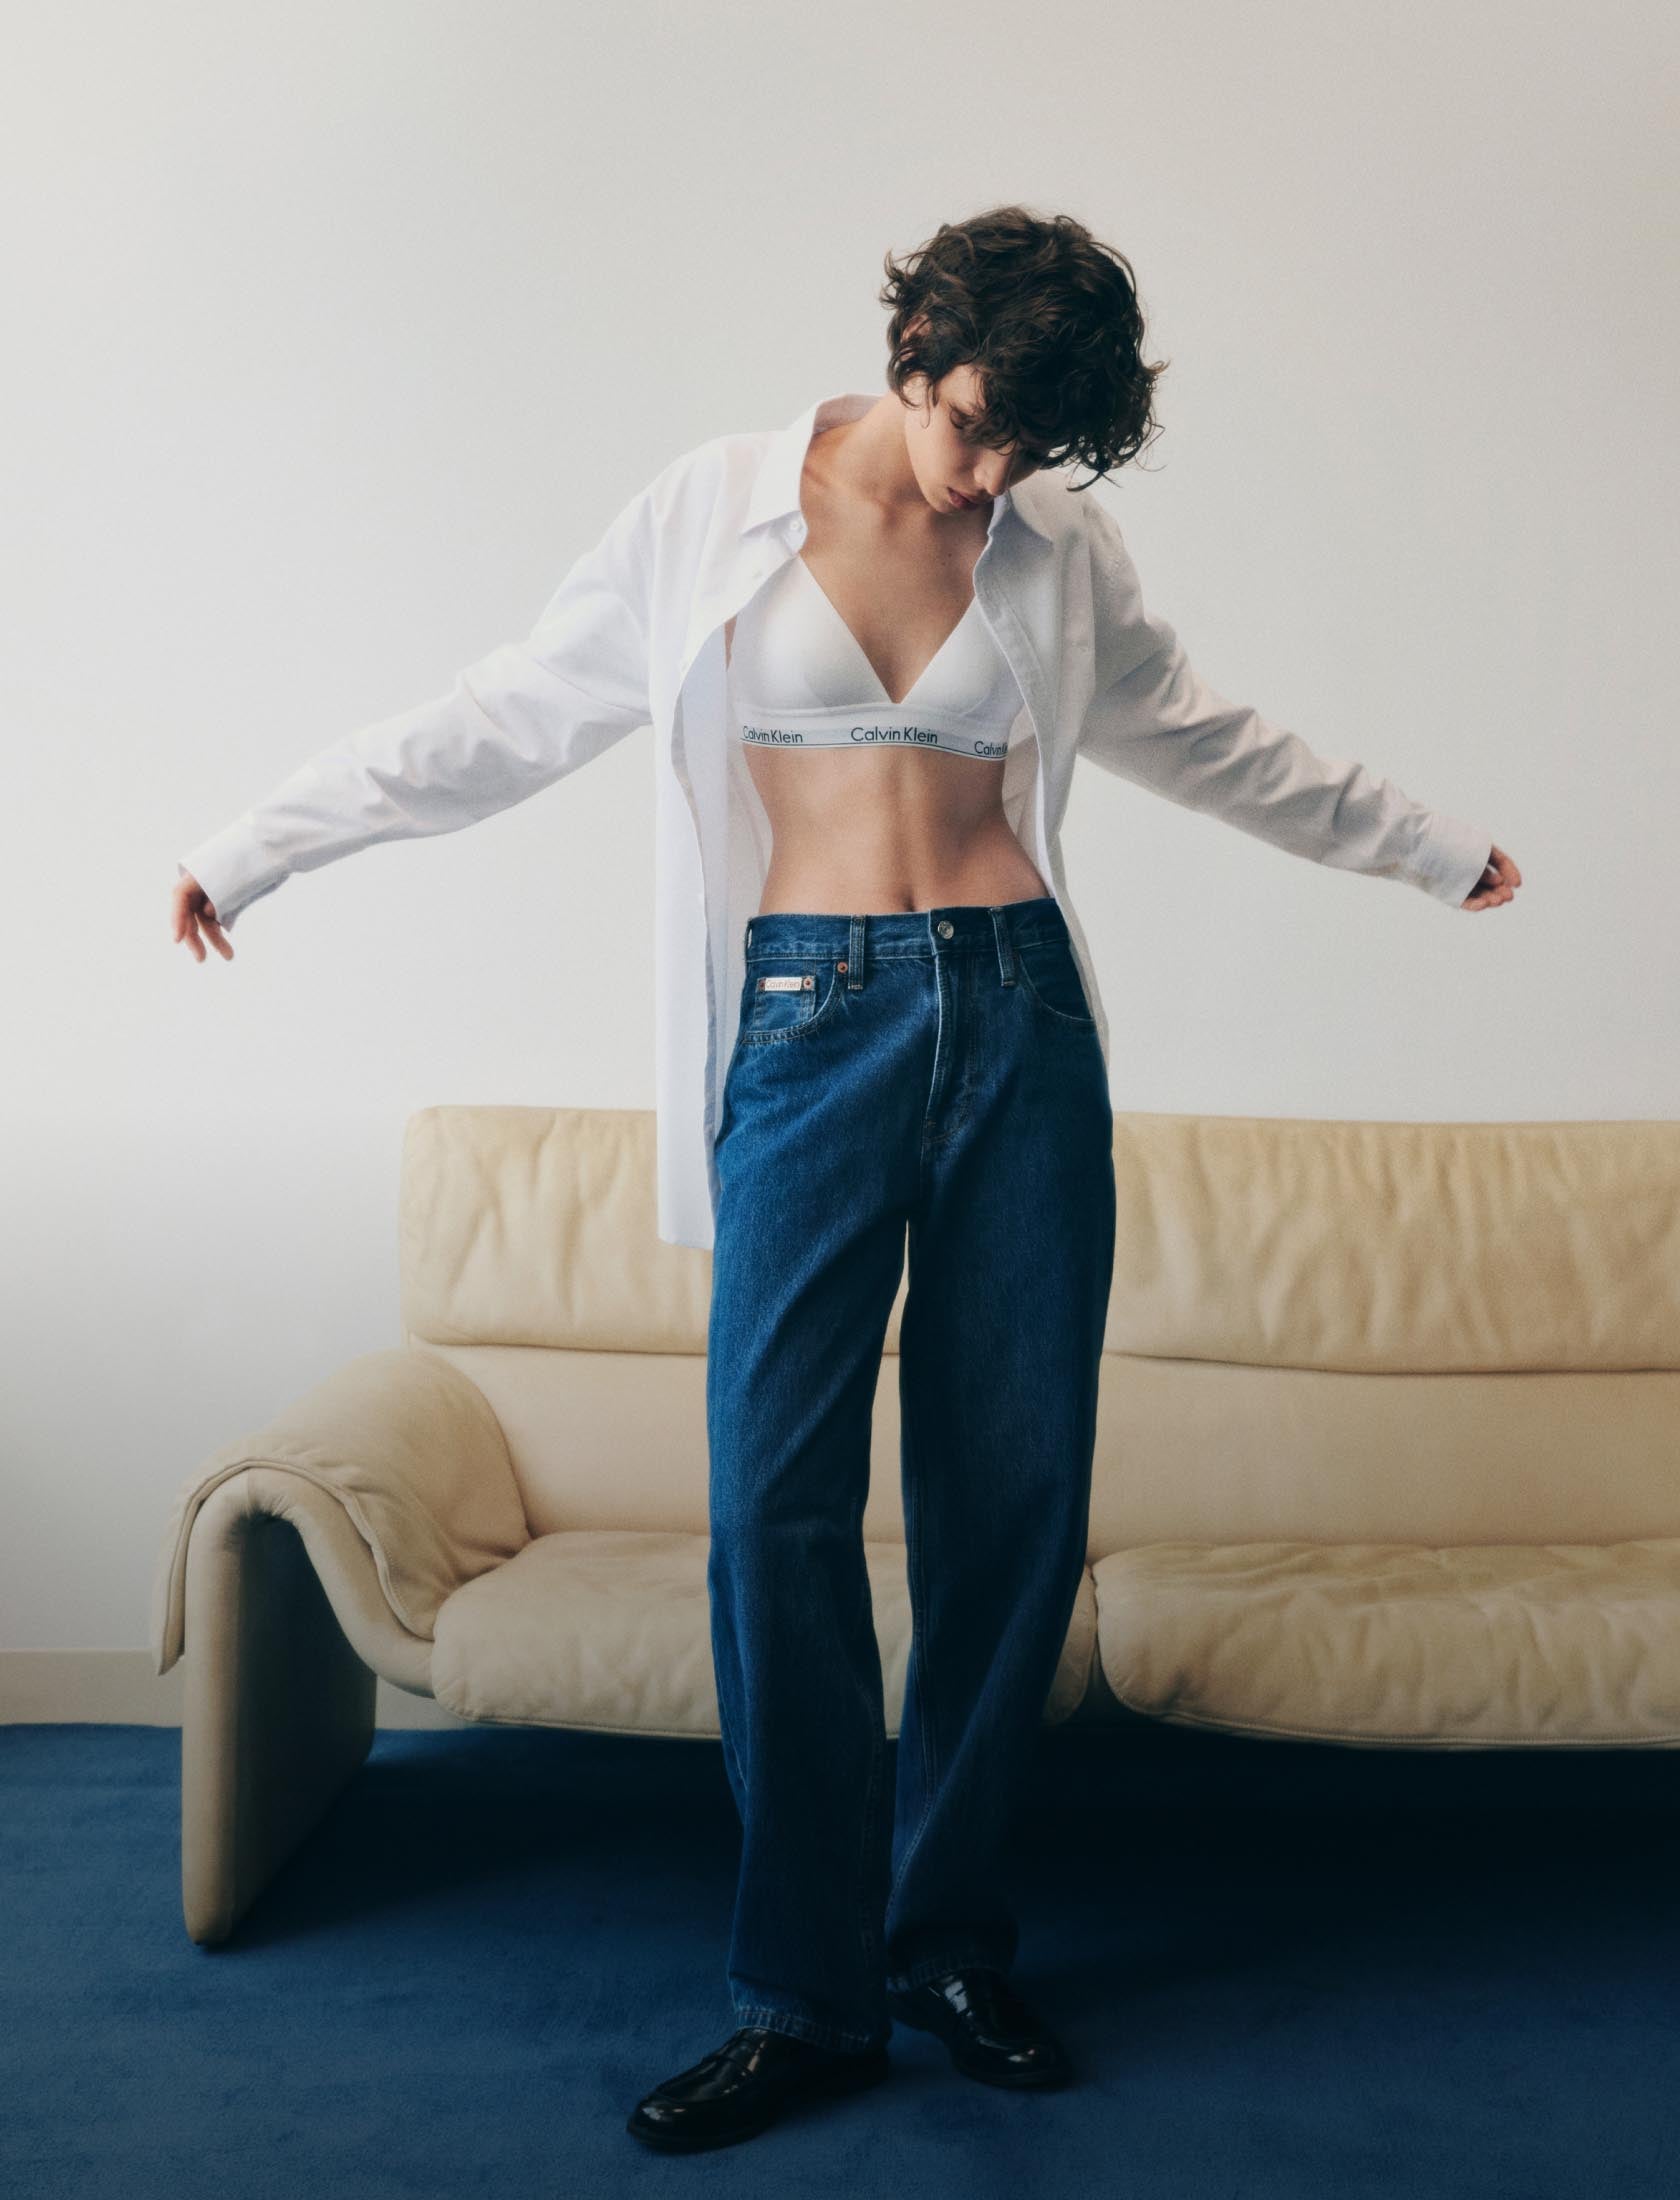 Calvin Klein Underwear Women's Modern Cotton Naturals Thong